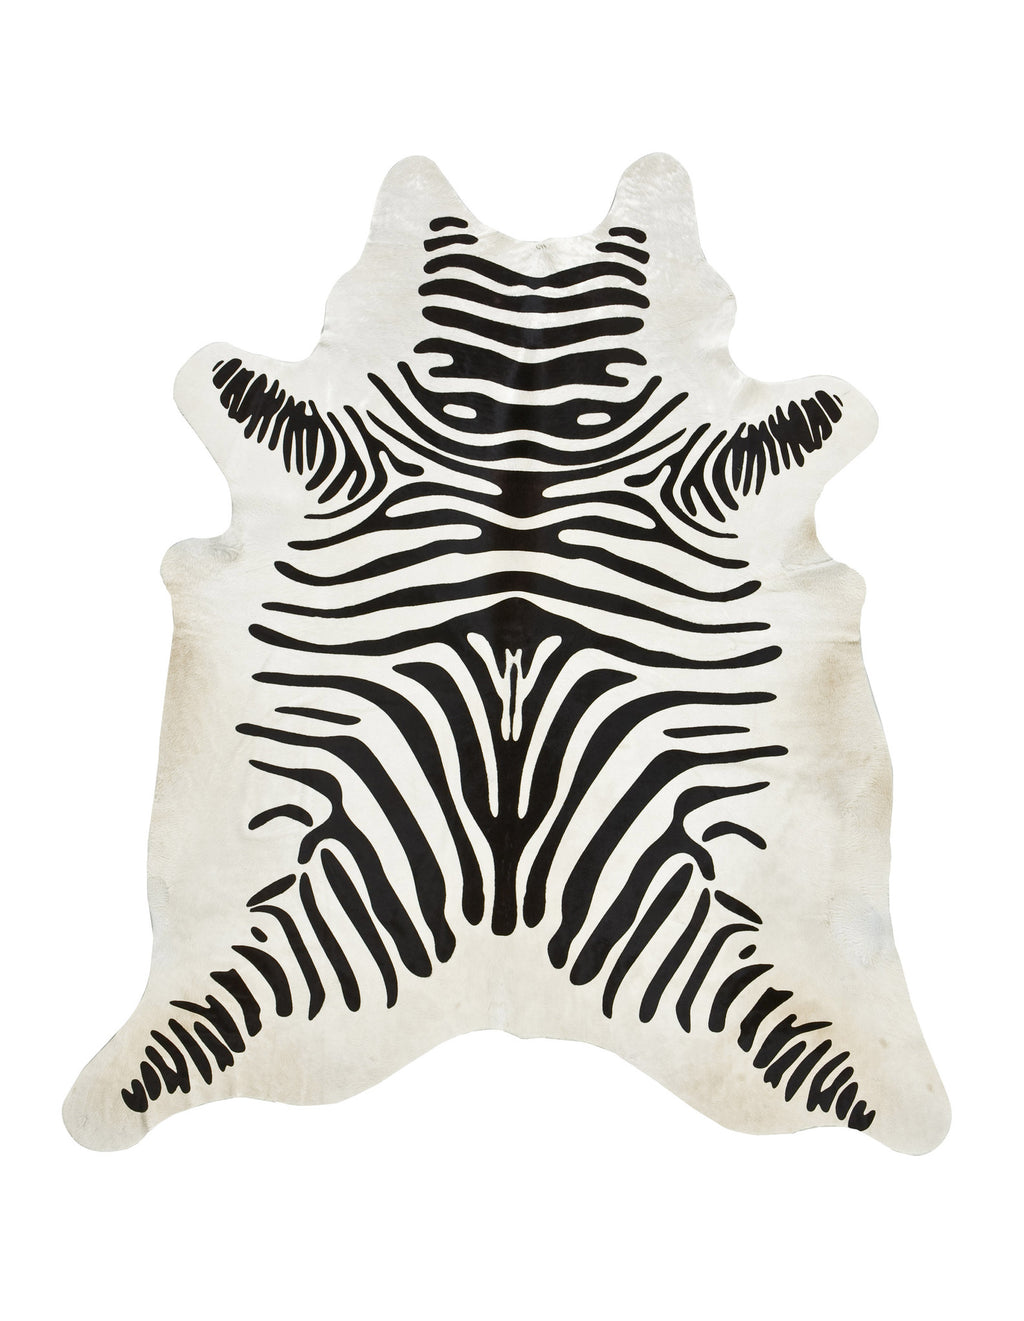 Zebra Print on off-white Cowhide rug 